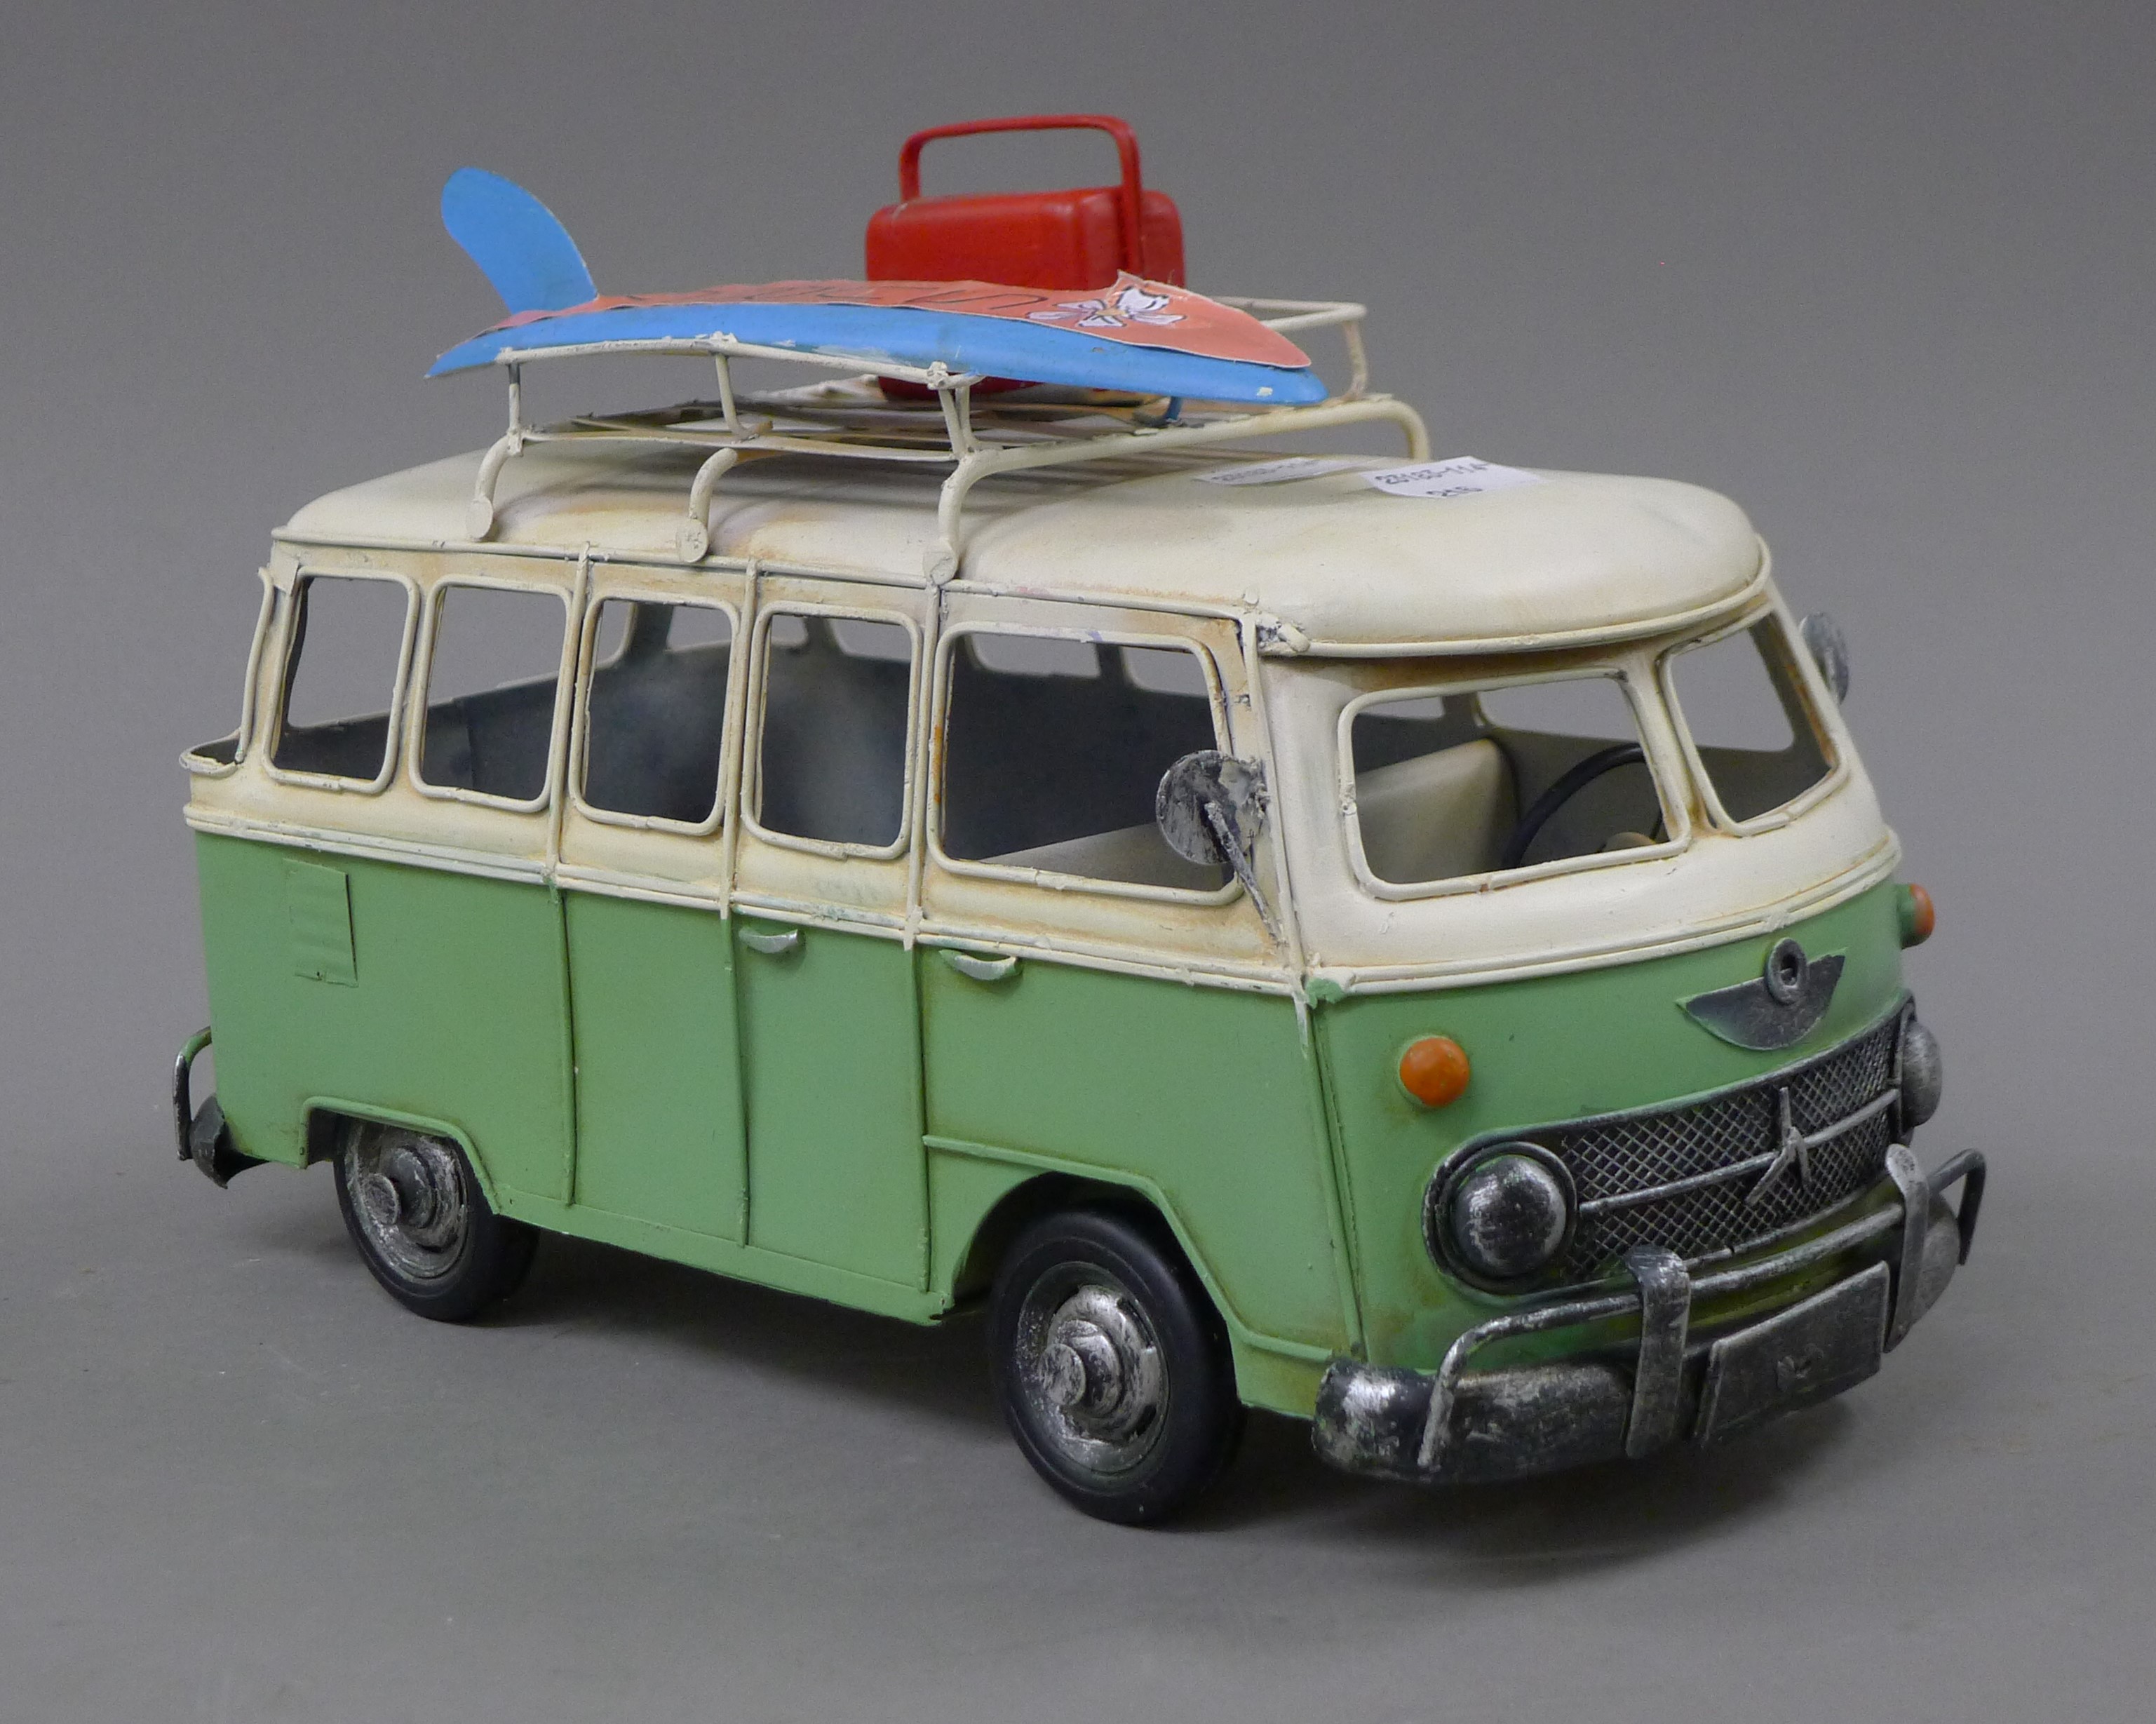 A model of a camper van. 26 cm long.